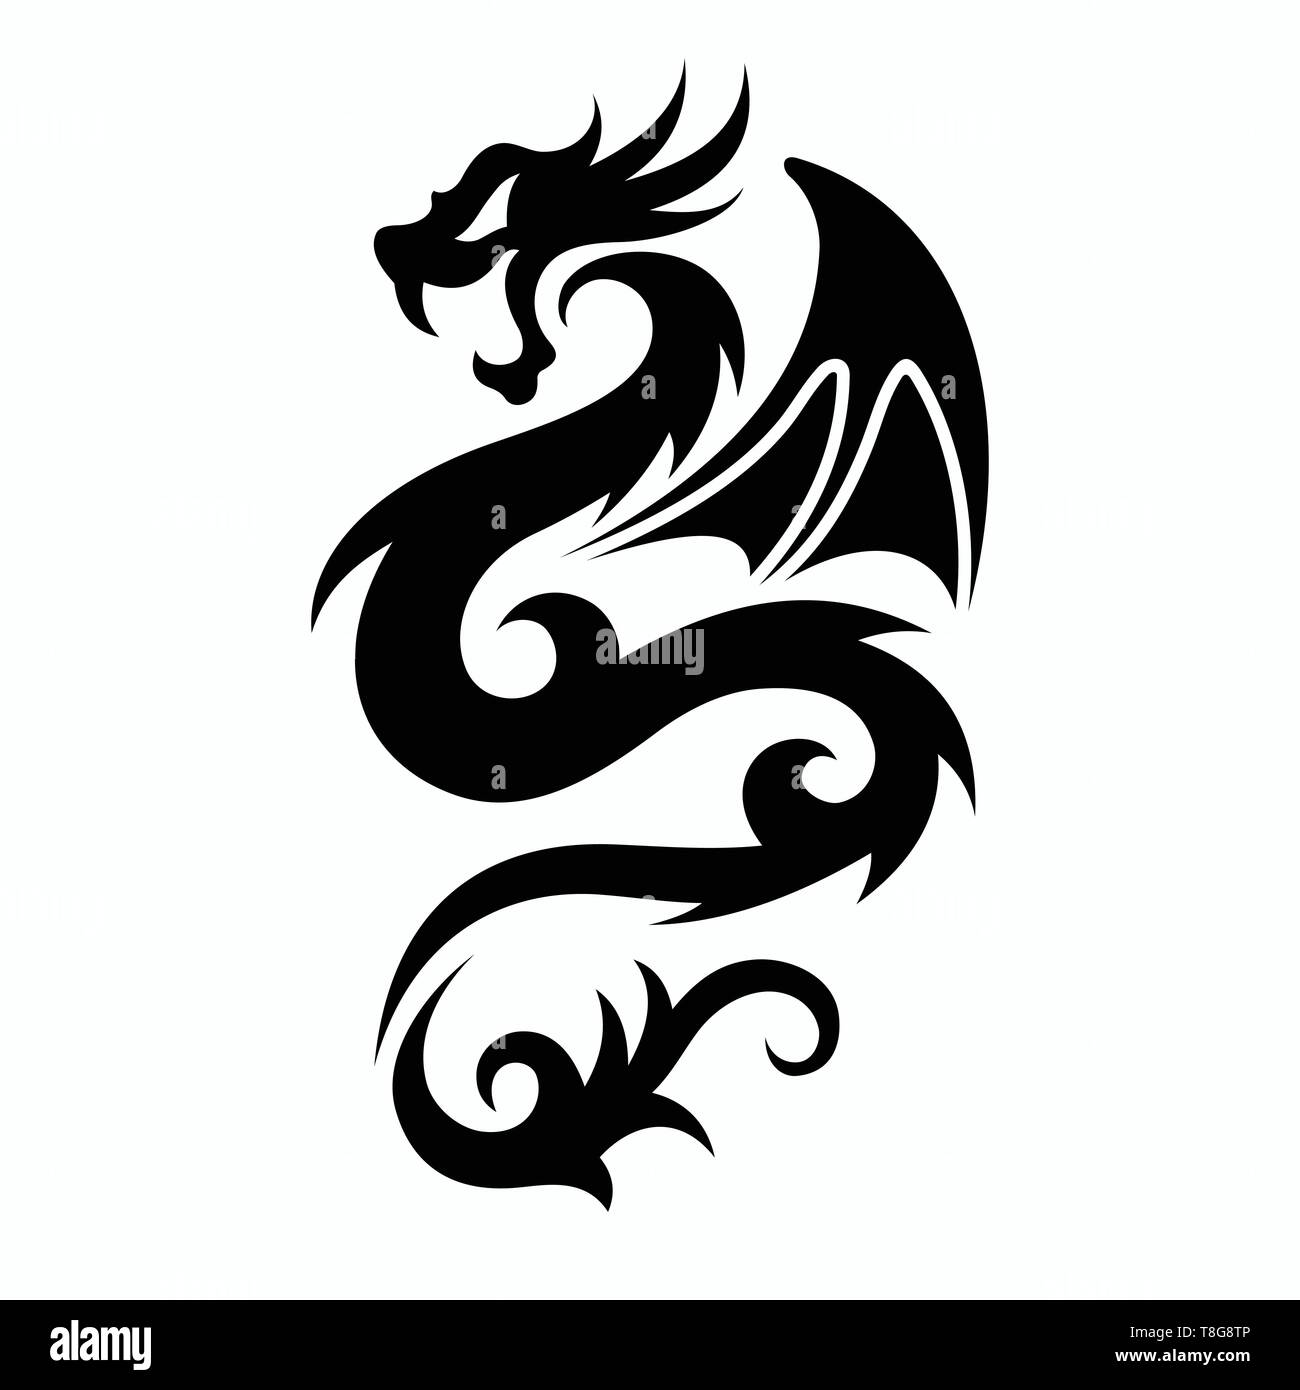 Dragon vettori per tatuaggio disegni e modelli, t-shirt disegni, loghi, simboli, facile da applicare. Illustrazione Vettoriale